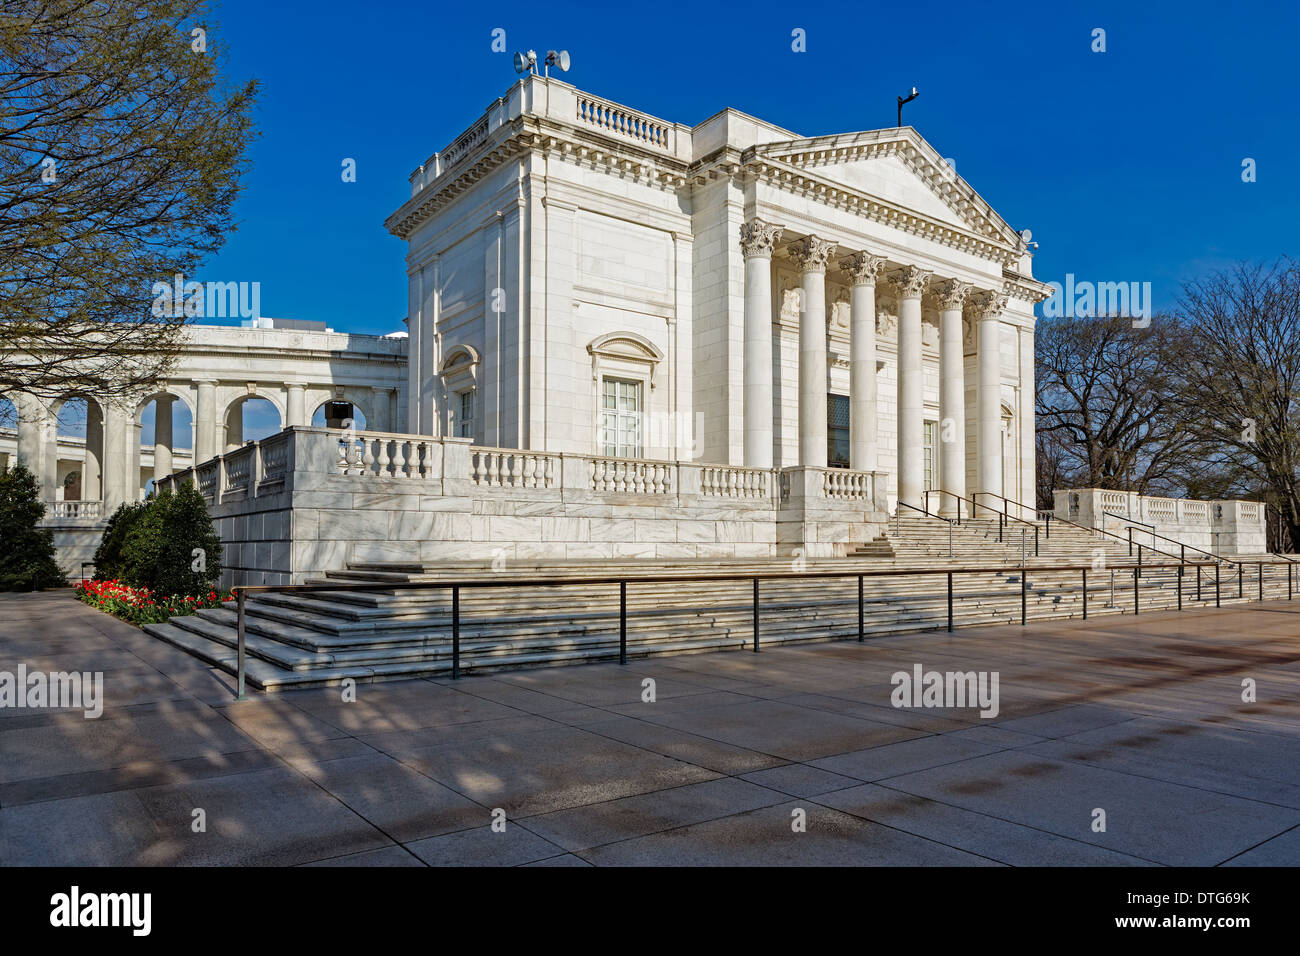 Ein Blick auf die architektonischen Details der Arlington Memorial Amphitheater auf dem Nationalfriedhof Arlington in Virginia. Das Amphitheater befindet sich am Grab des unbekannten Soldaten. Stockfoto